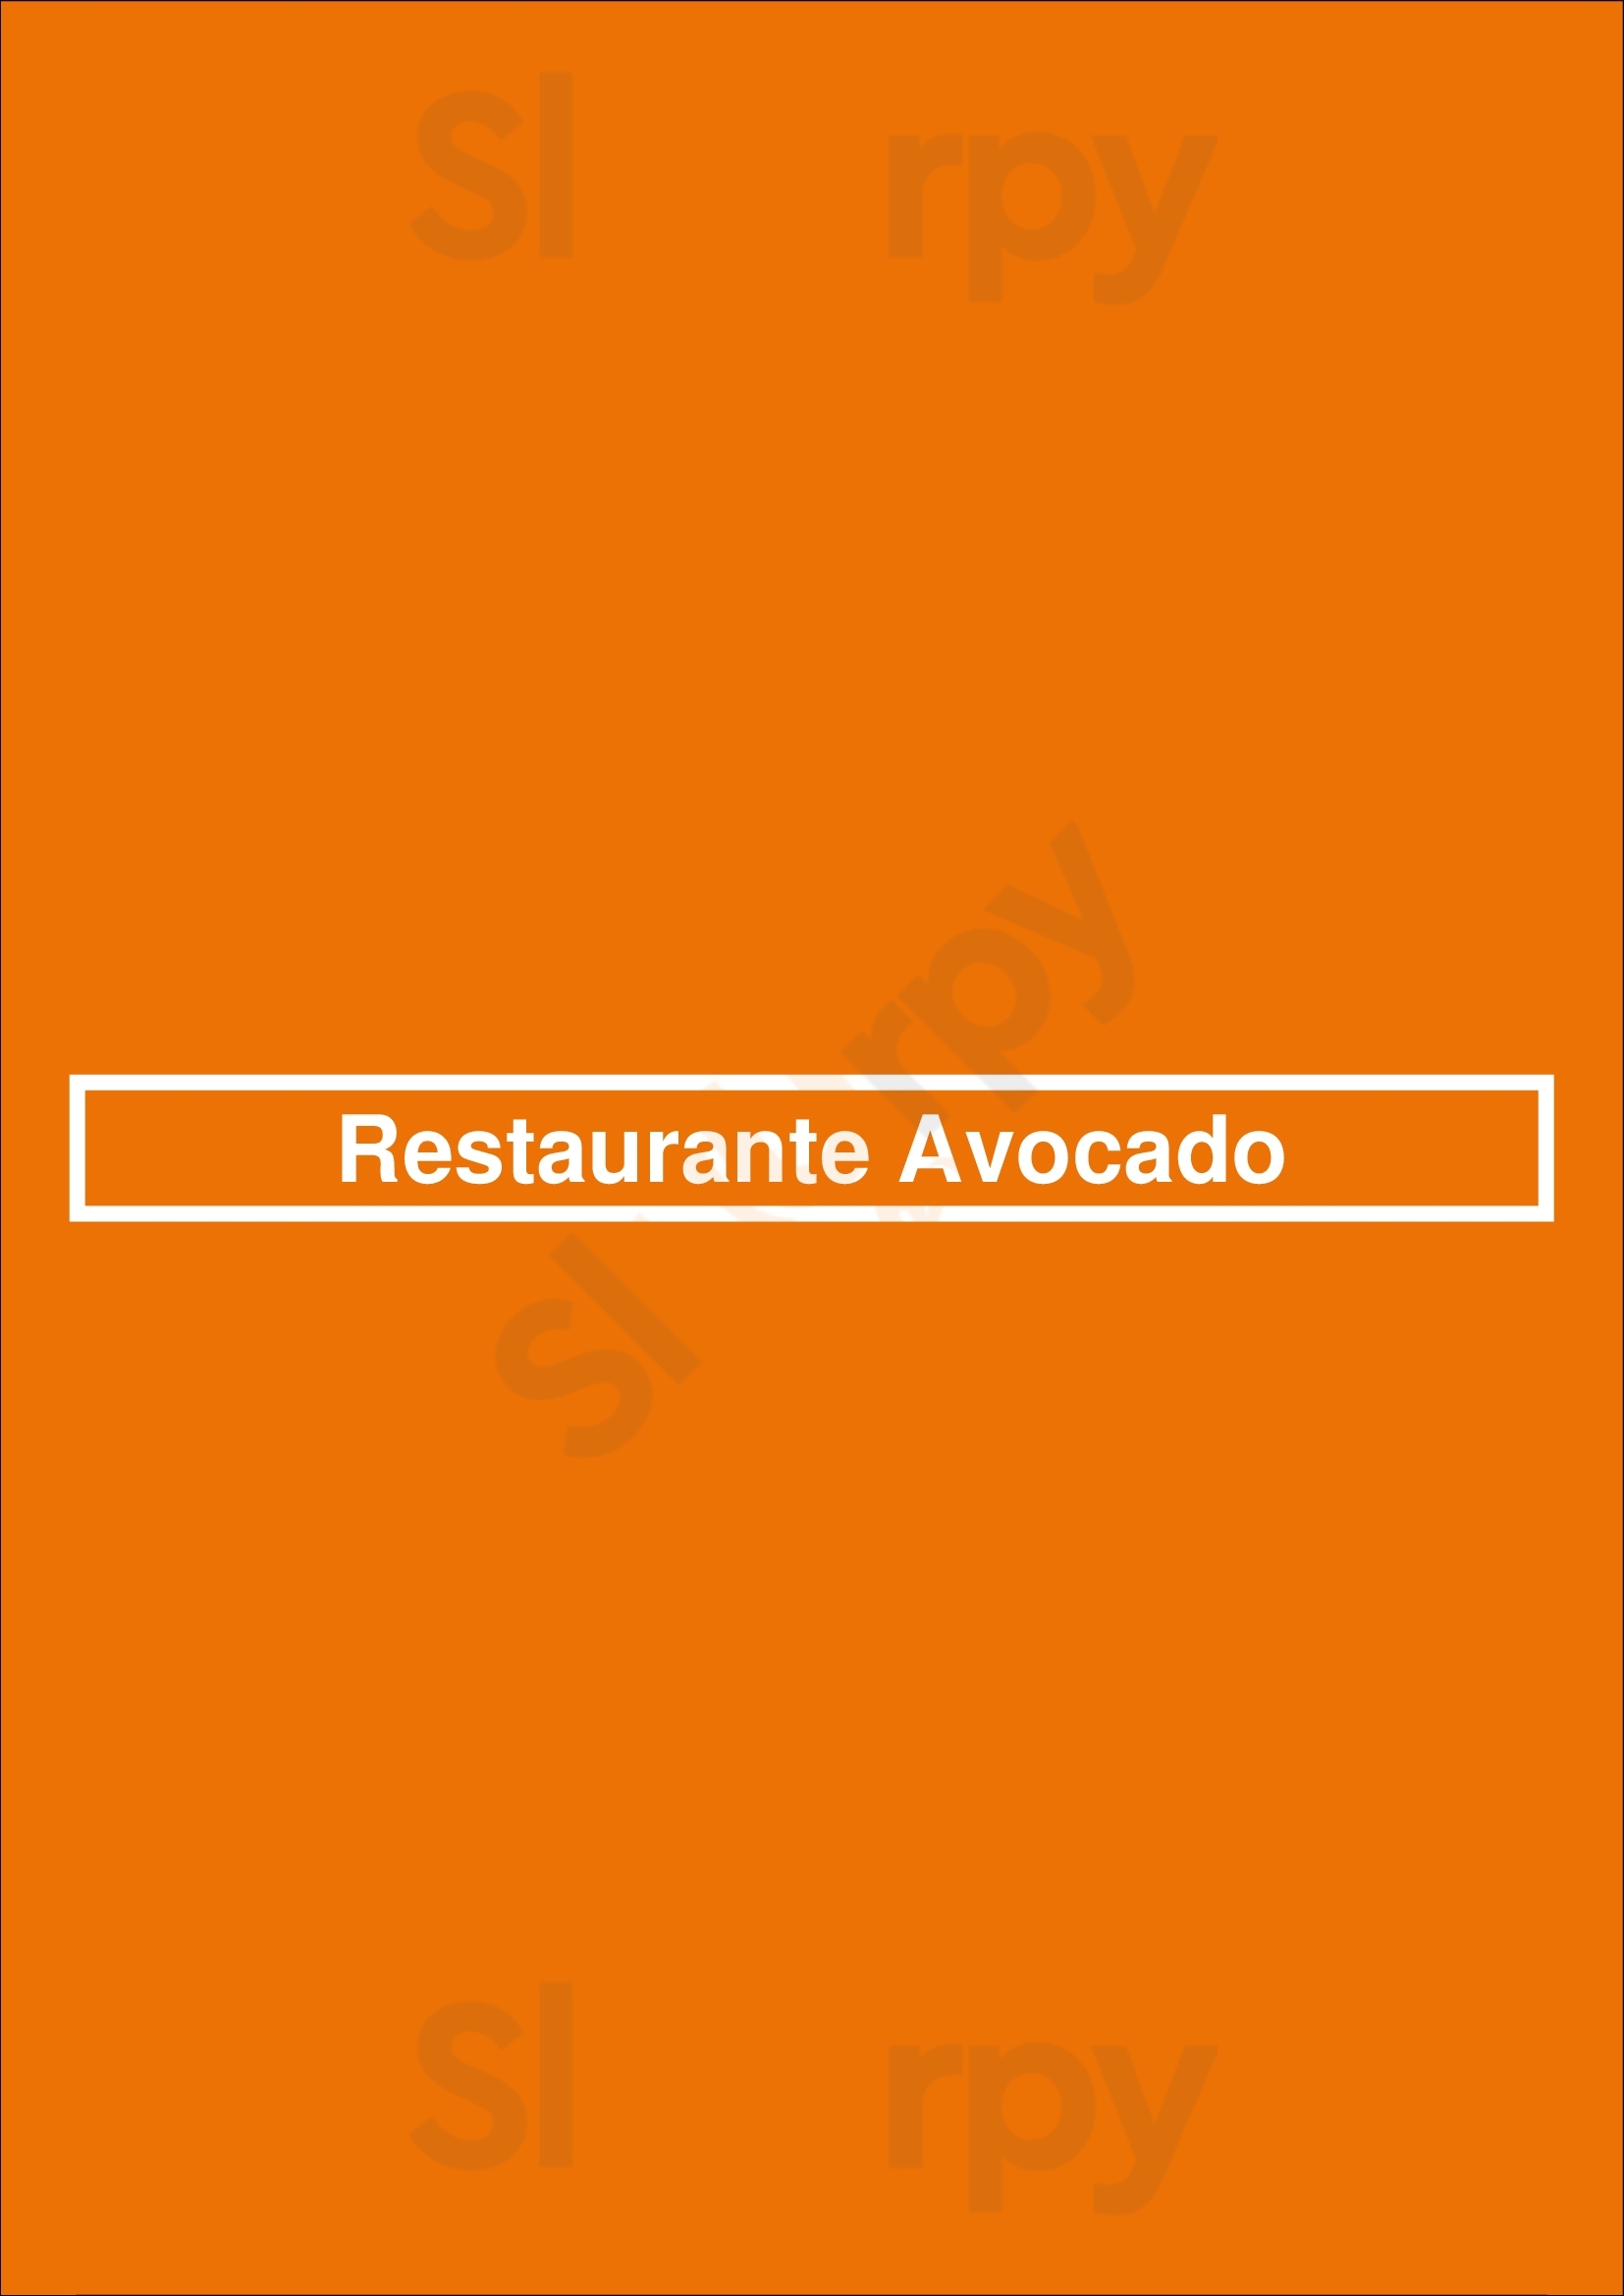 Restaurante Avocado Barcelona Menu - 1